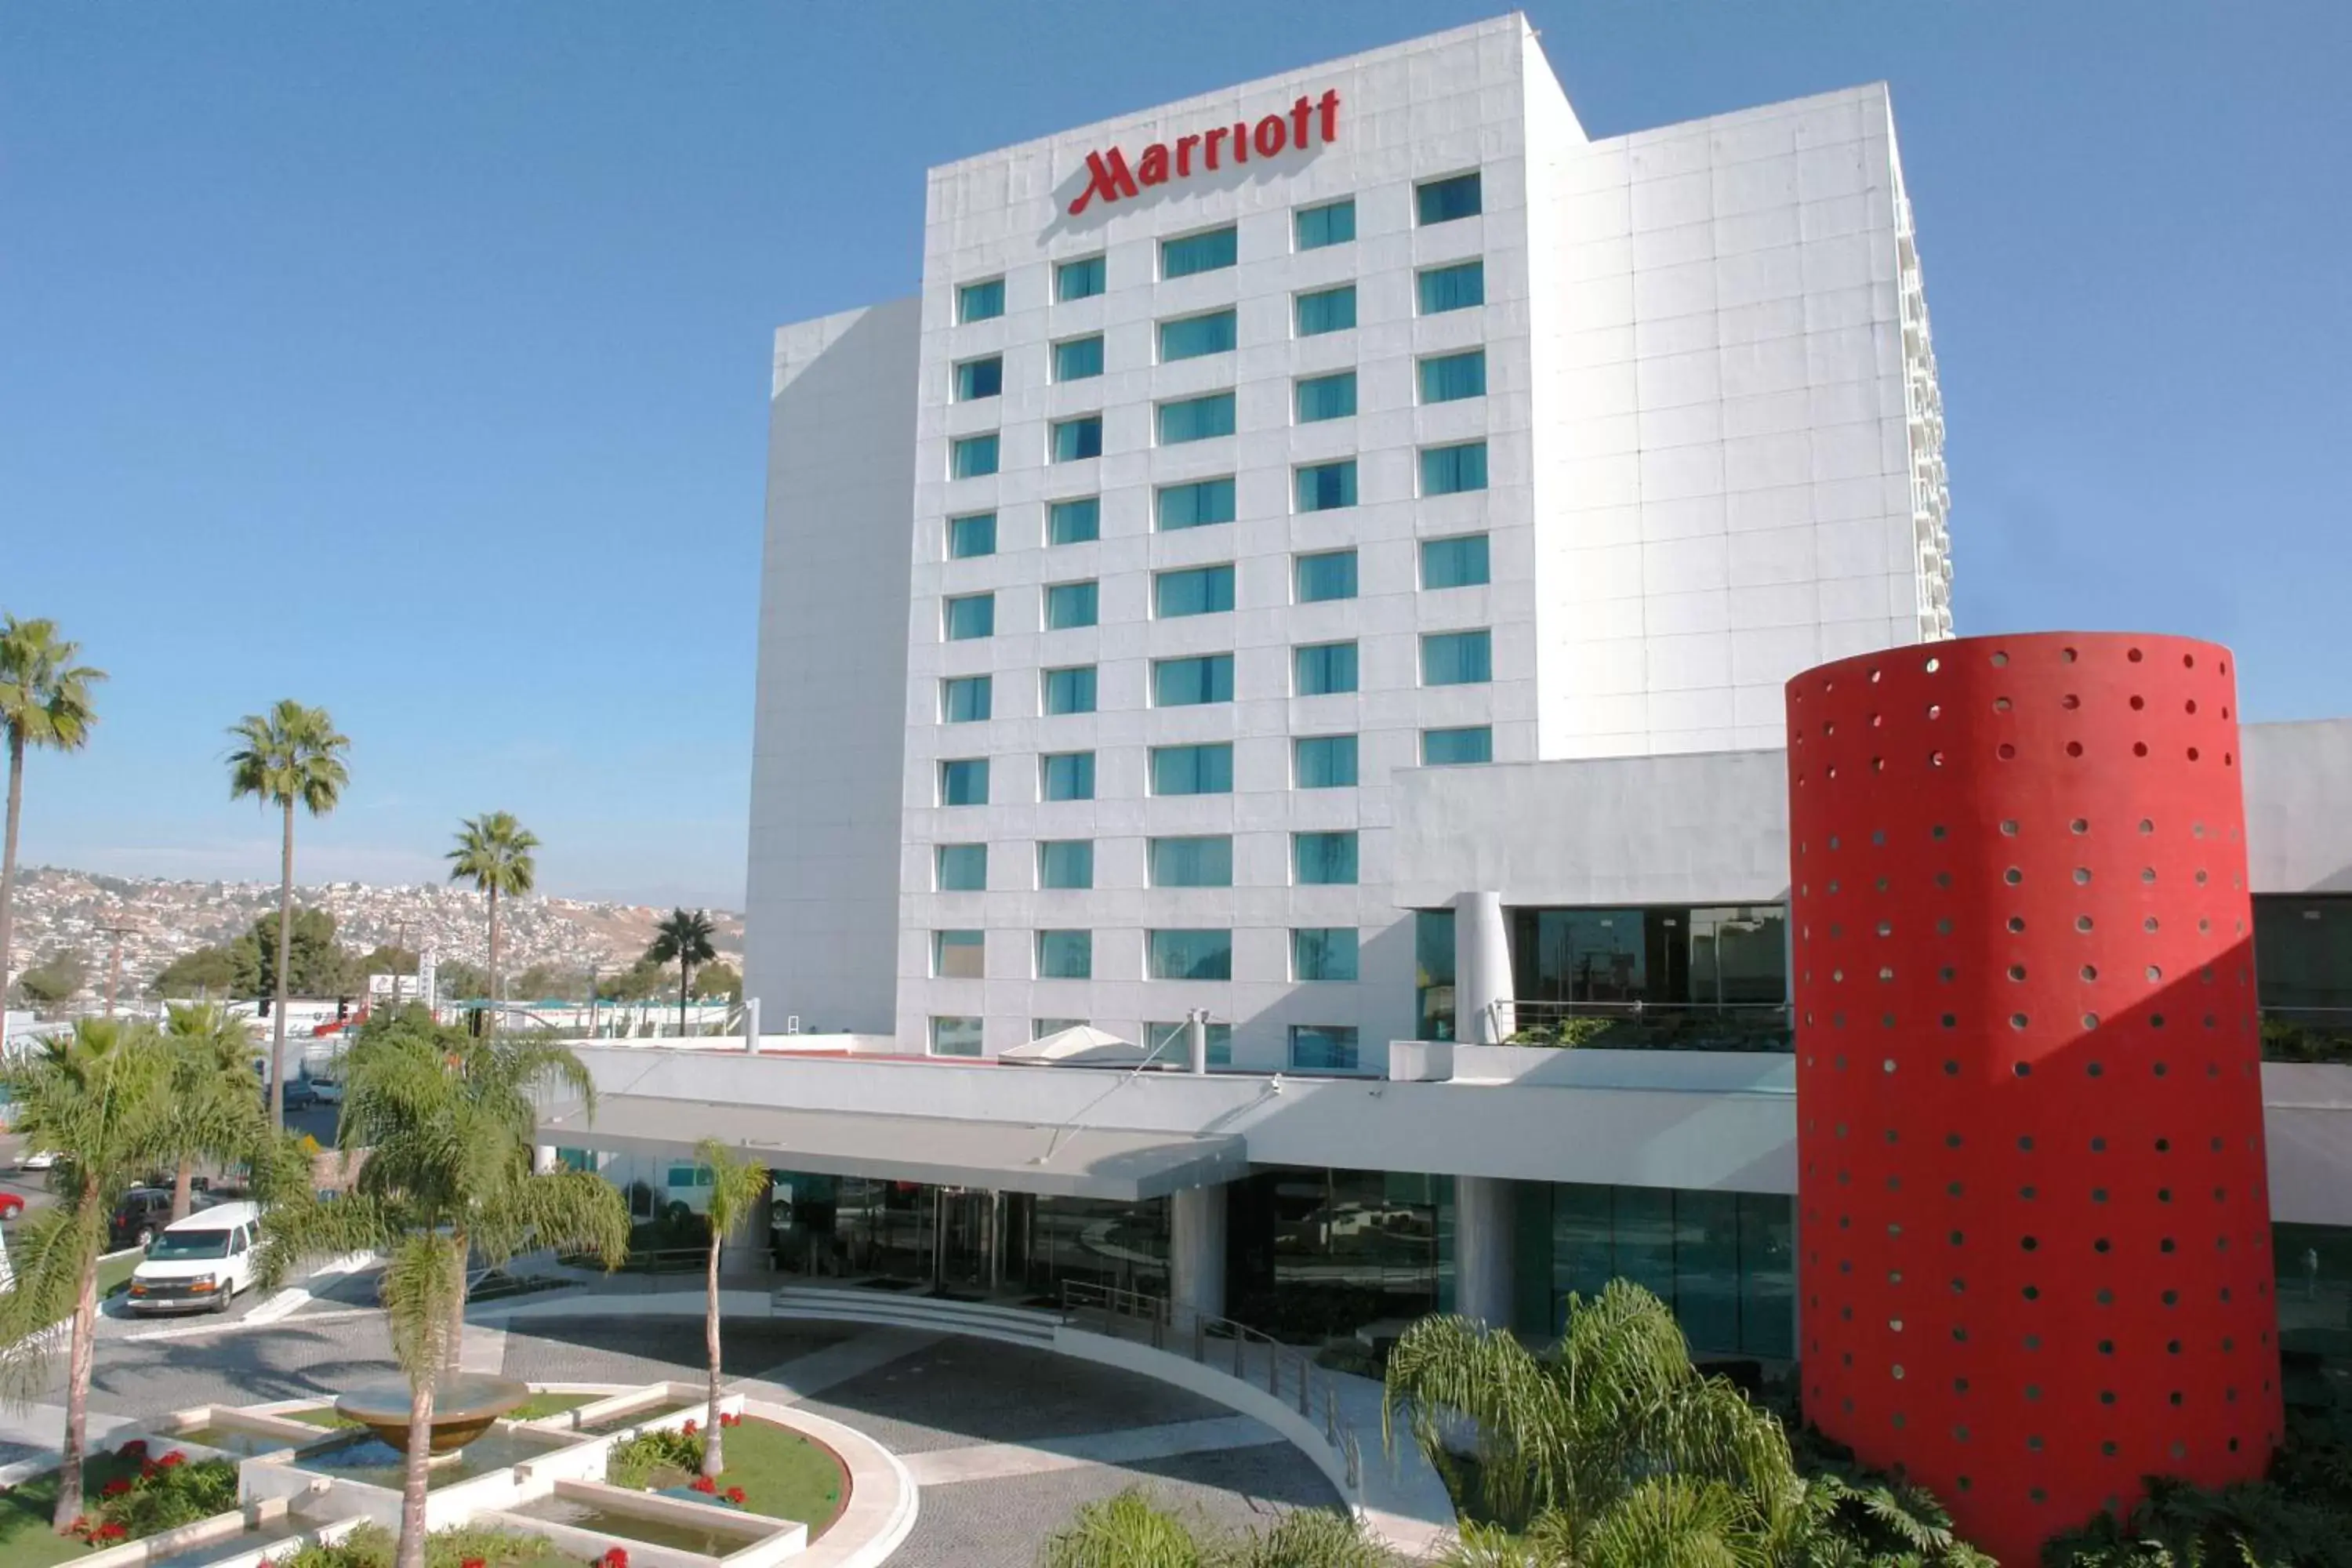 Property Building in Marriott Tijuana Hotel